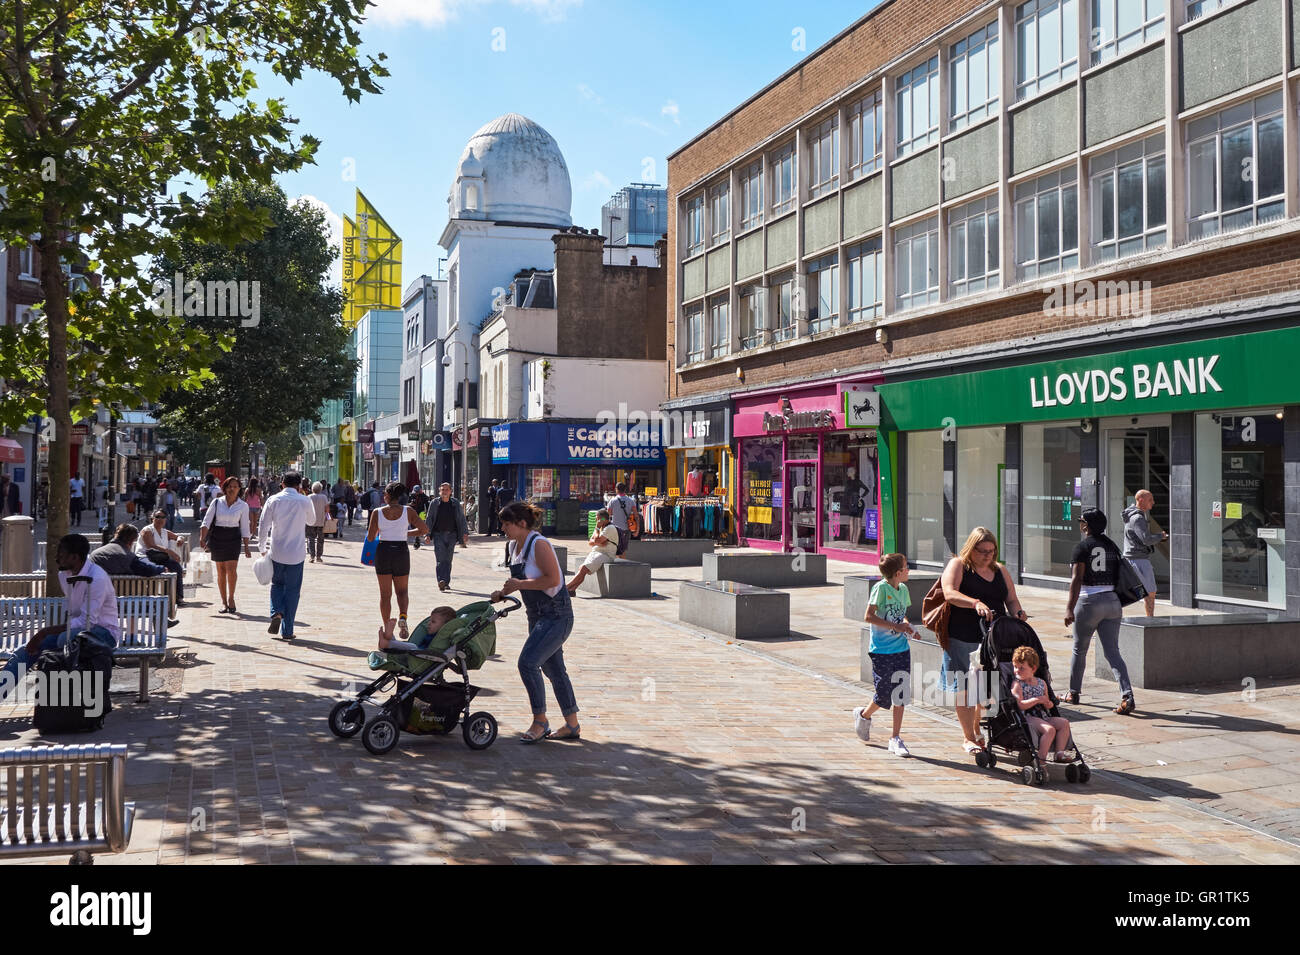 Shopping in der Fußgängerzone von North End in Croydon, London England Vereinigtes Königreich UK Stockfoto